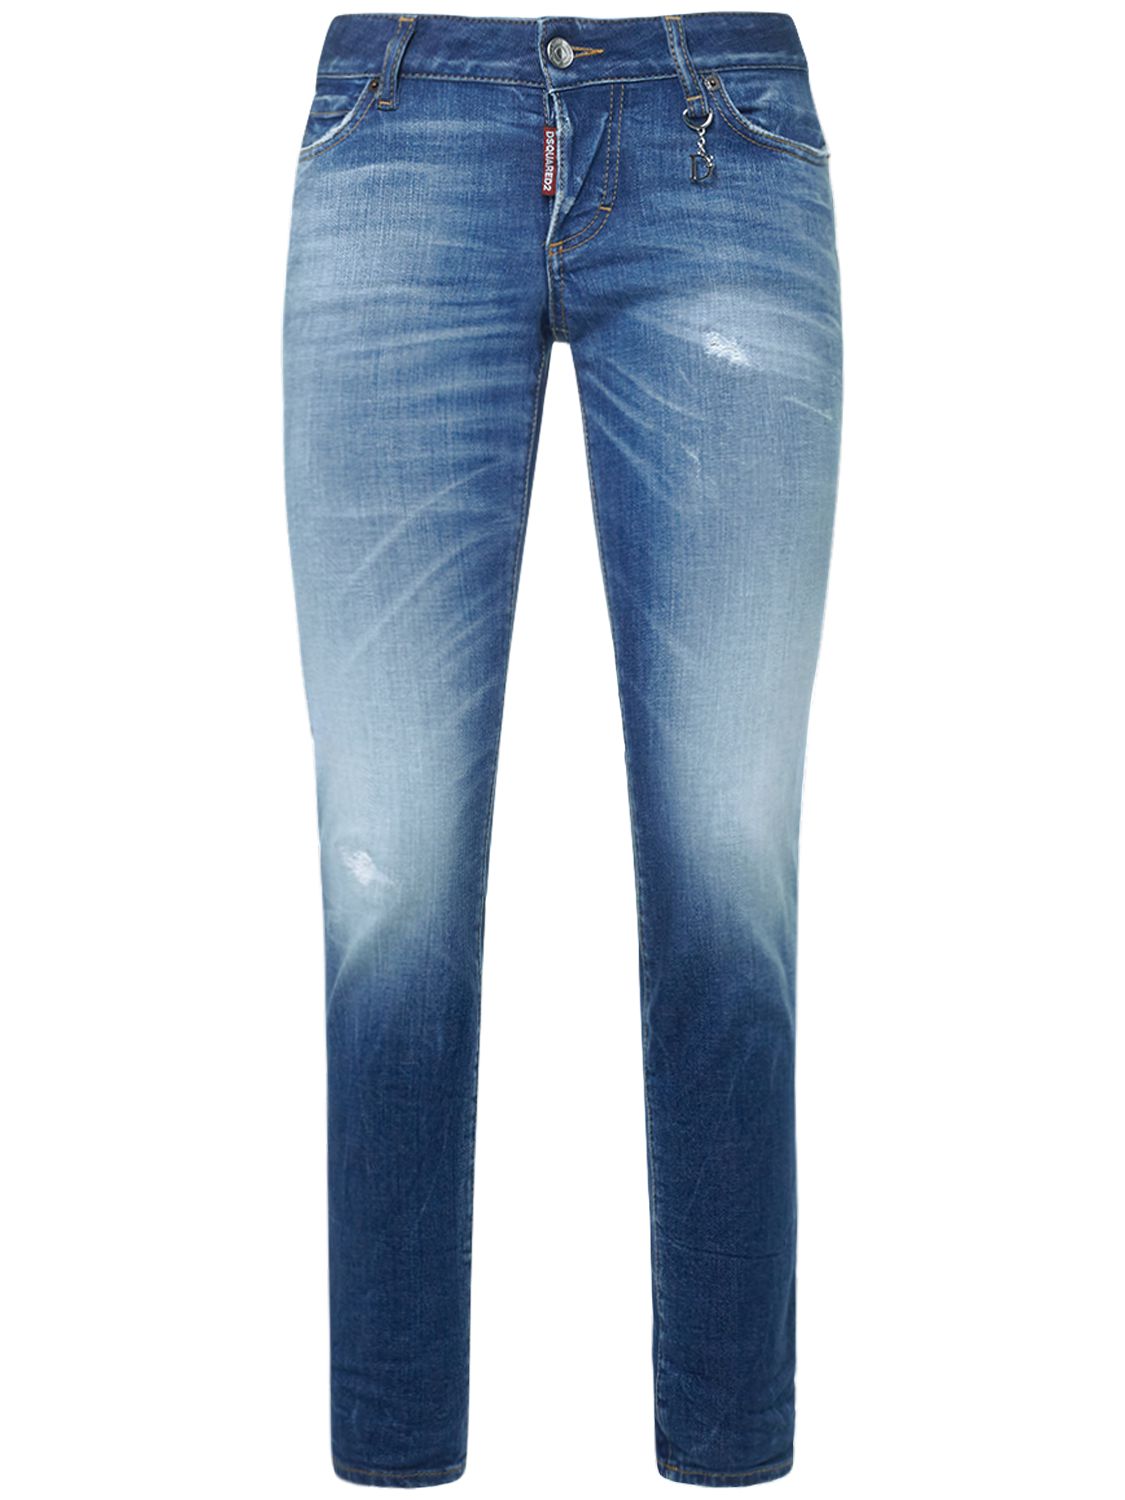 Mujer Jeans Skinny De Cintura Baja 34 - DSQUARED2 - Modalova